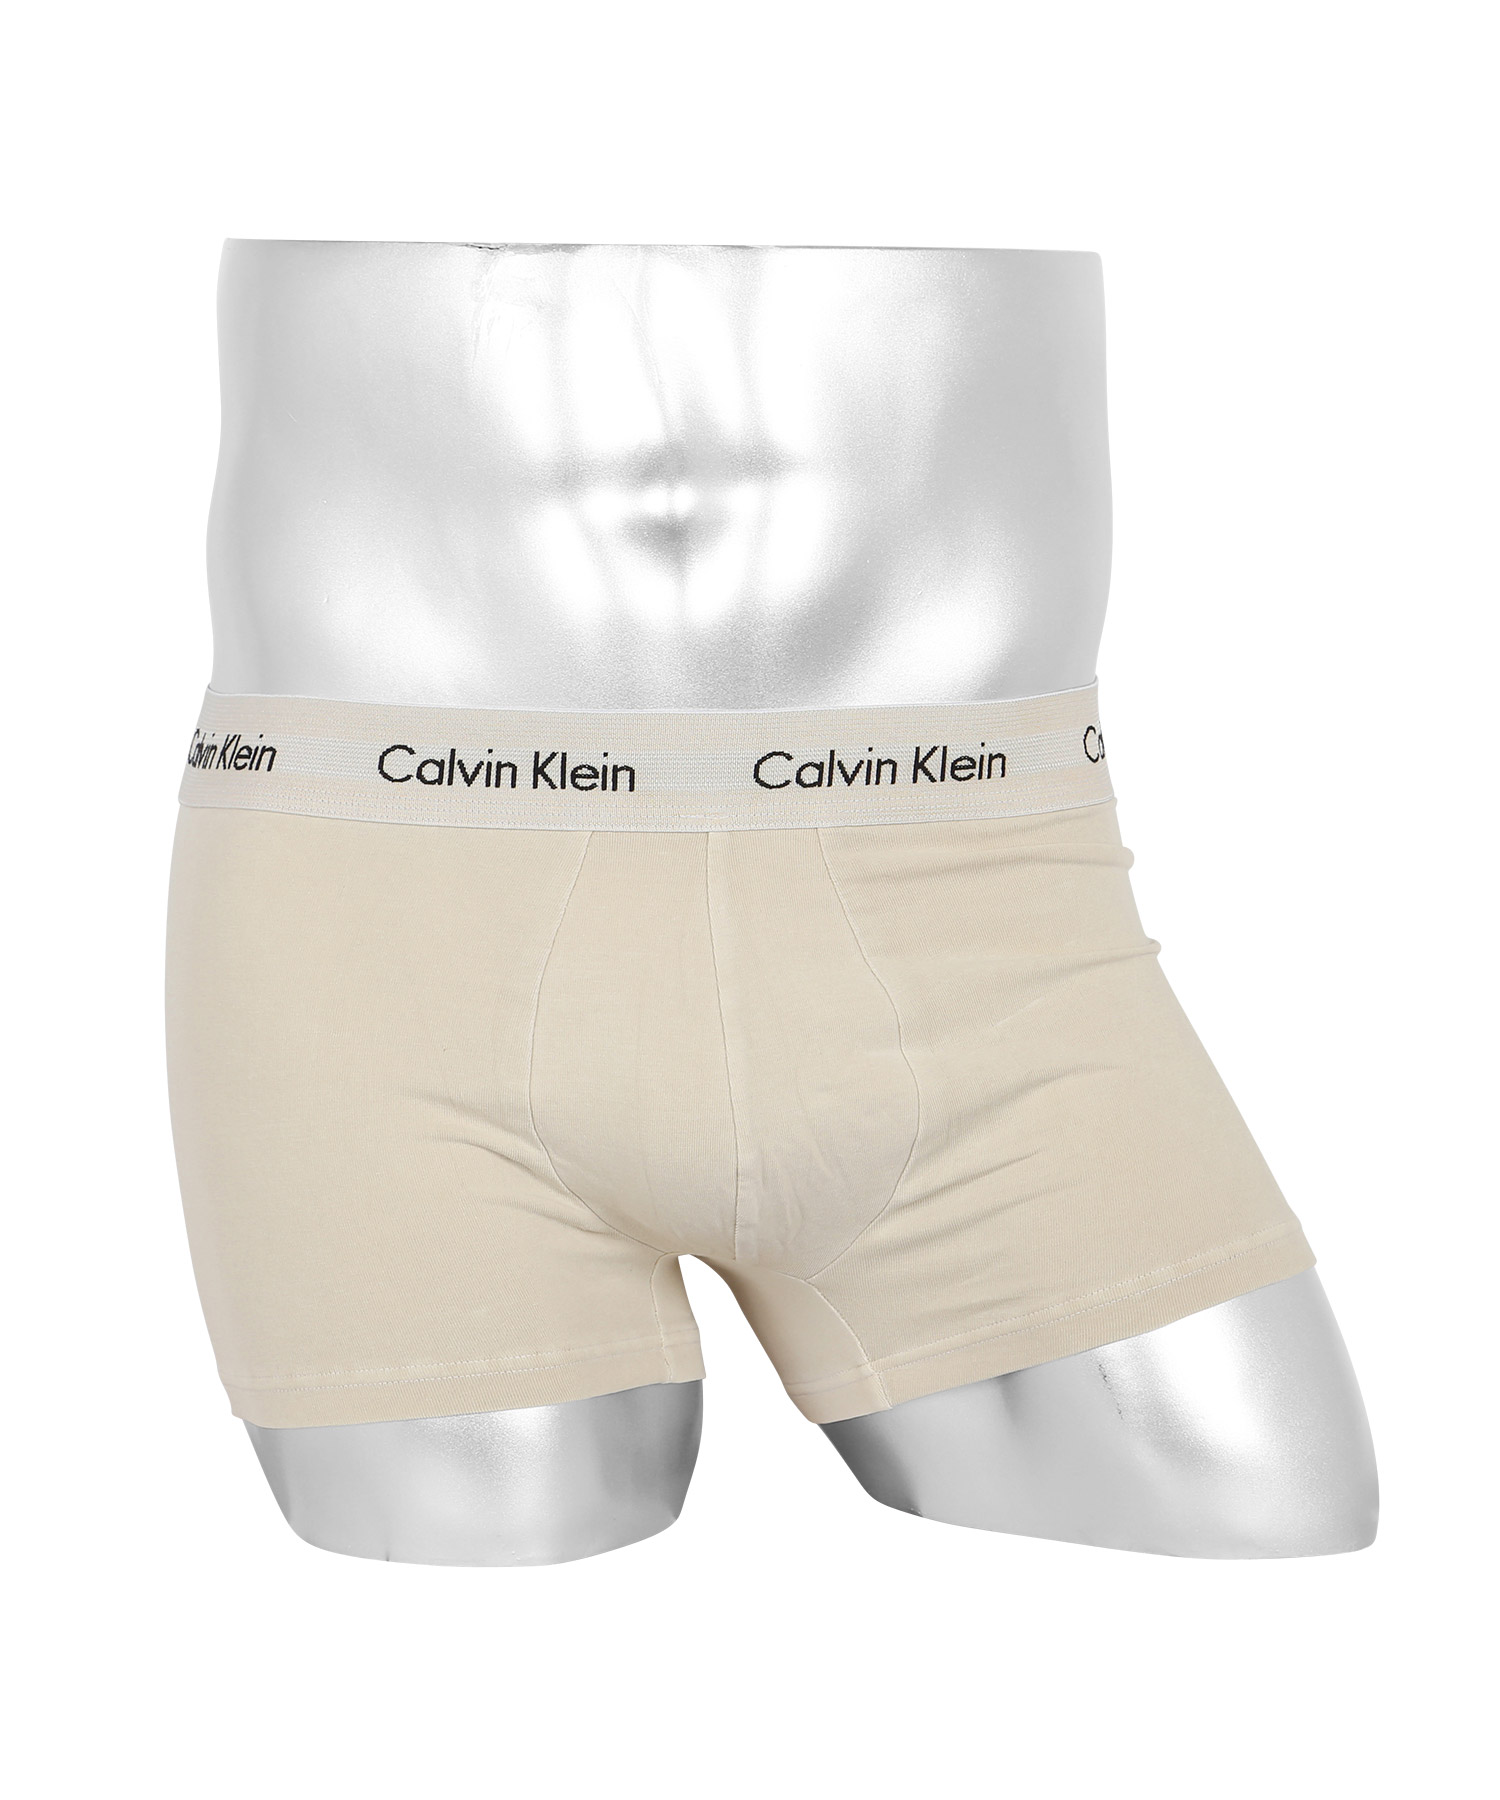 カルバンクライン ボクサーパンツ メンズ Calvin Klein ローライズ アンダーウェア 男性...